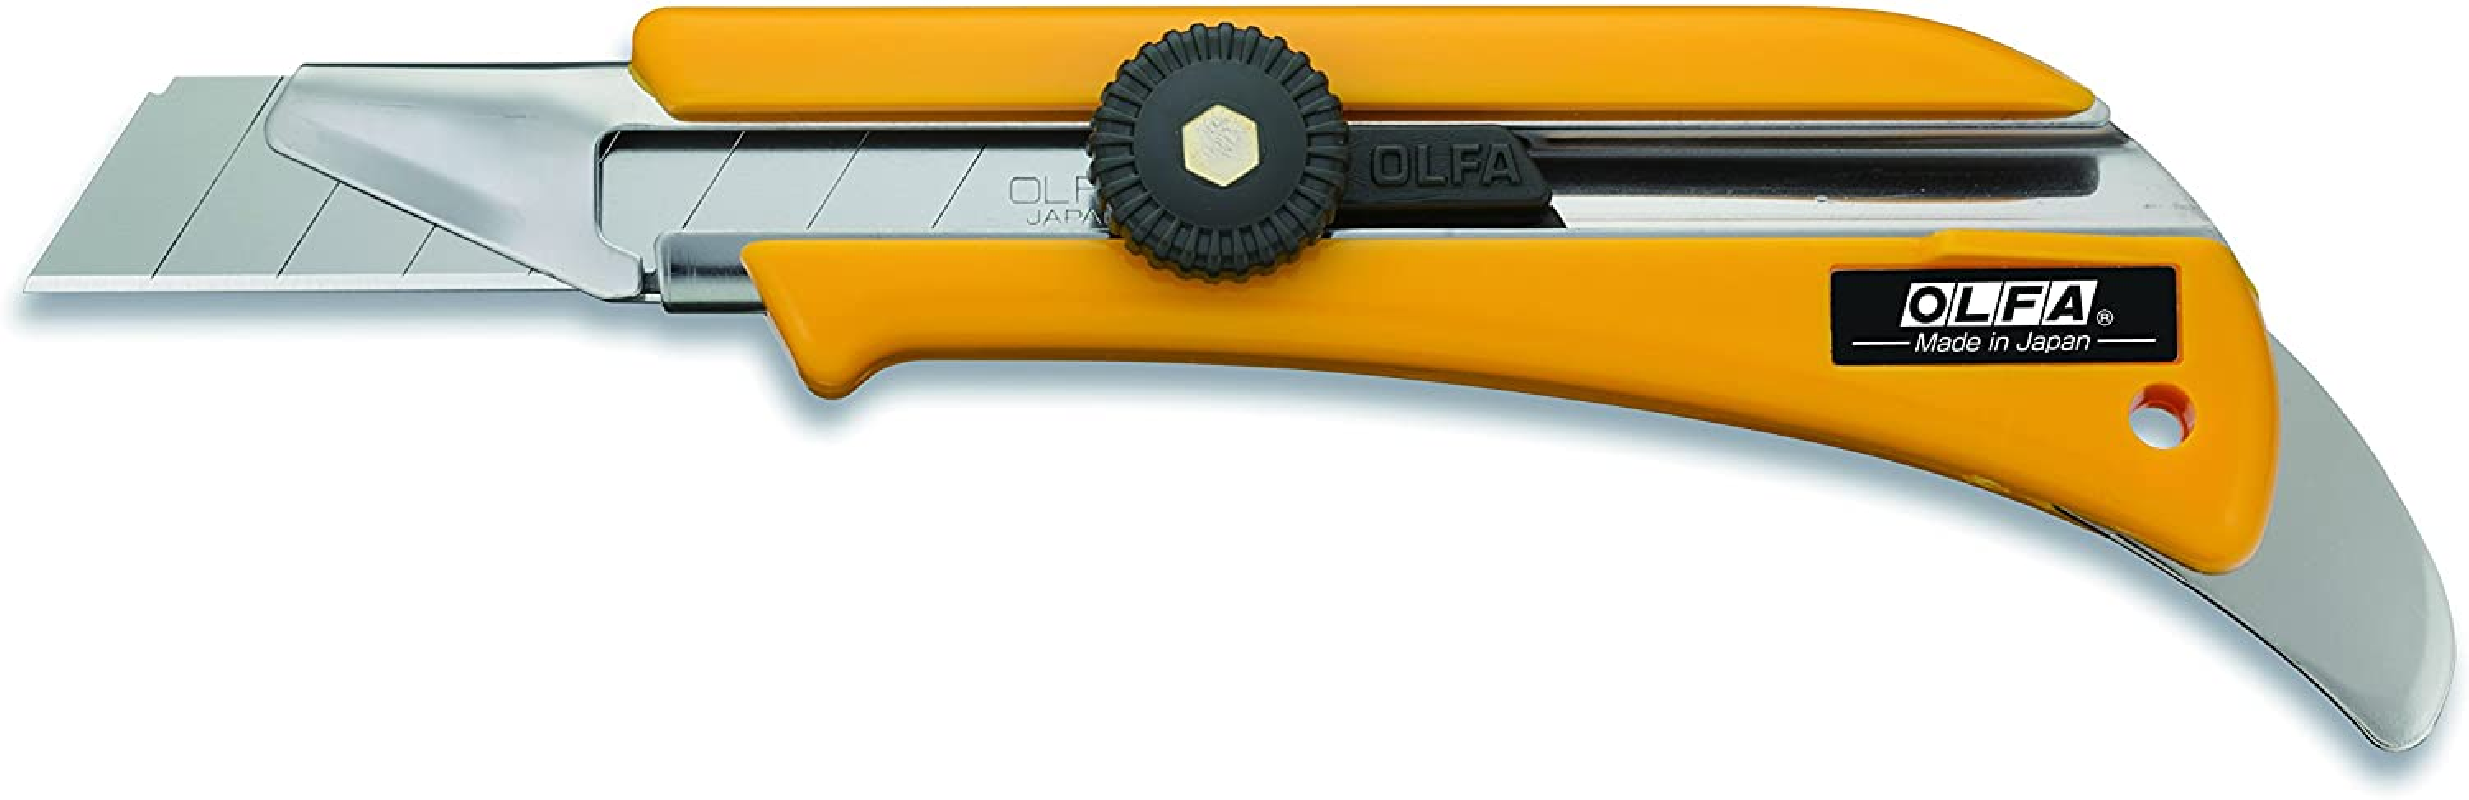 Ref:78918] WEDO cutter professionnel Premium Soft-Cut, lame: 18mm